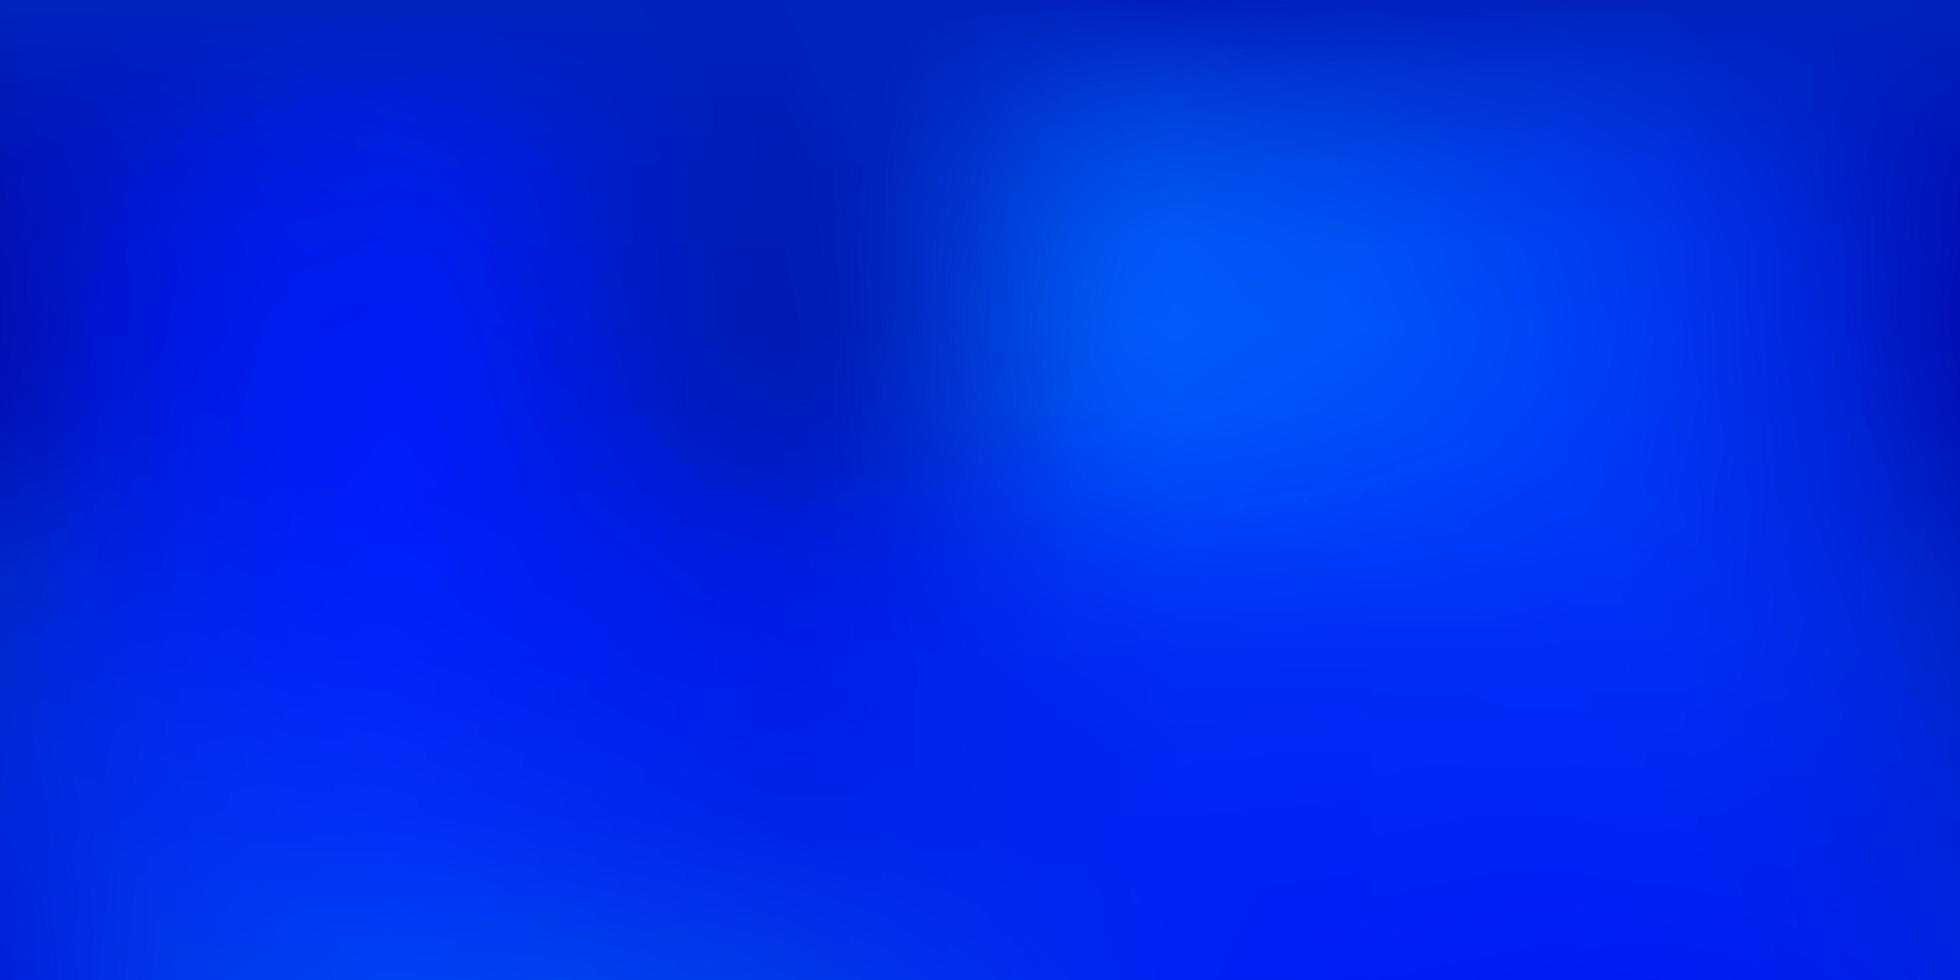 Dark BLUE vector gradient blur texture.